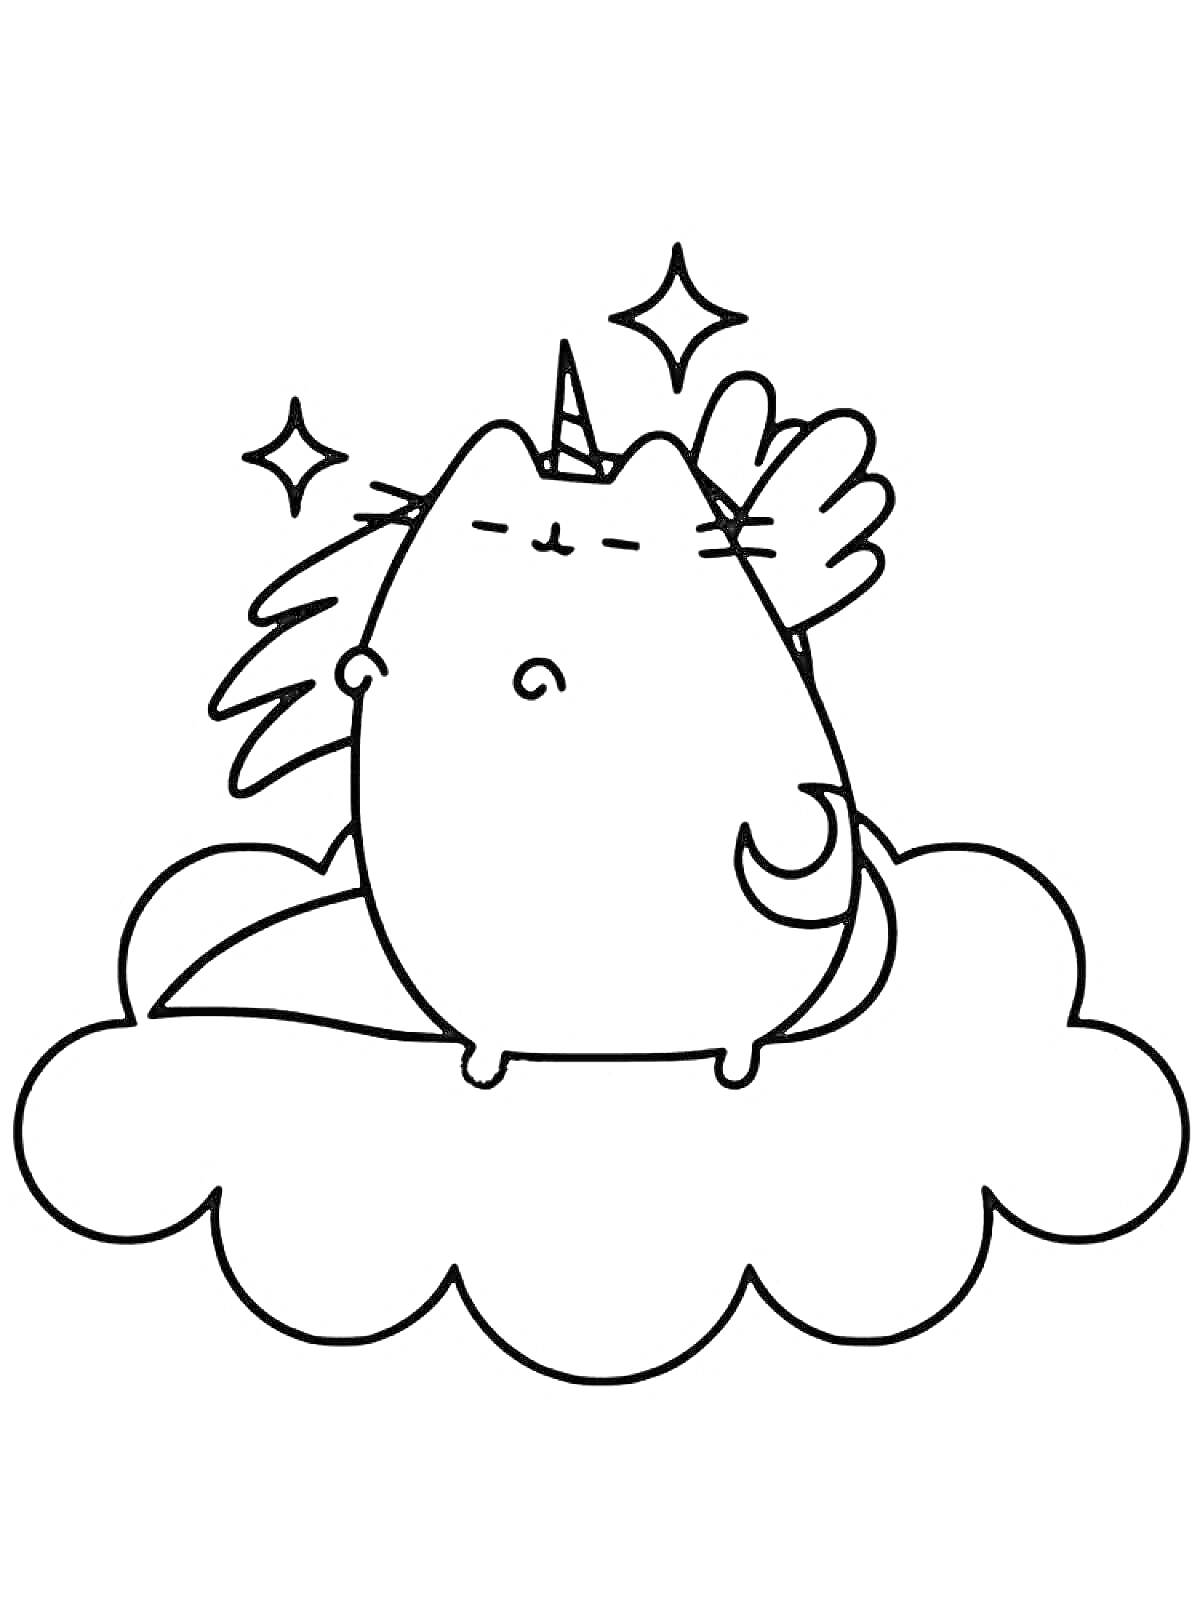 Раскраска Кот Пушин с рогом единорога и крыльями на облаке и звездах